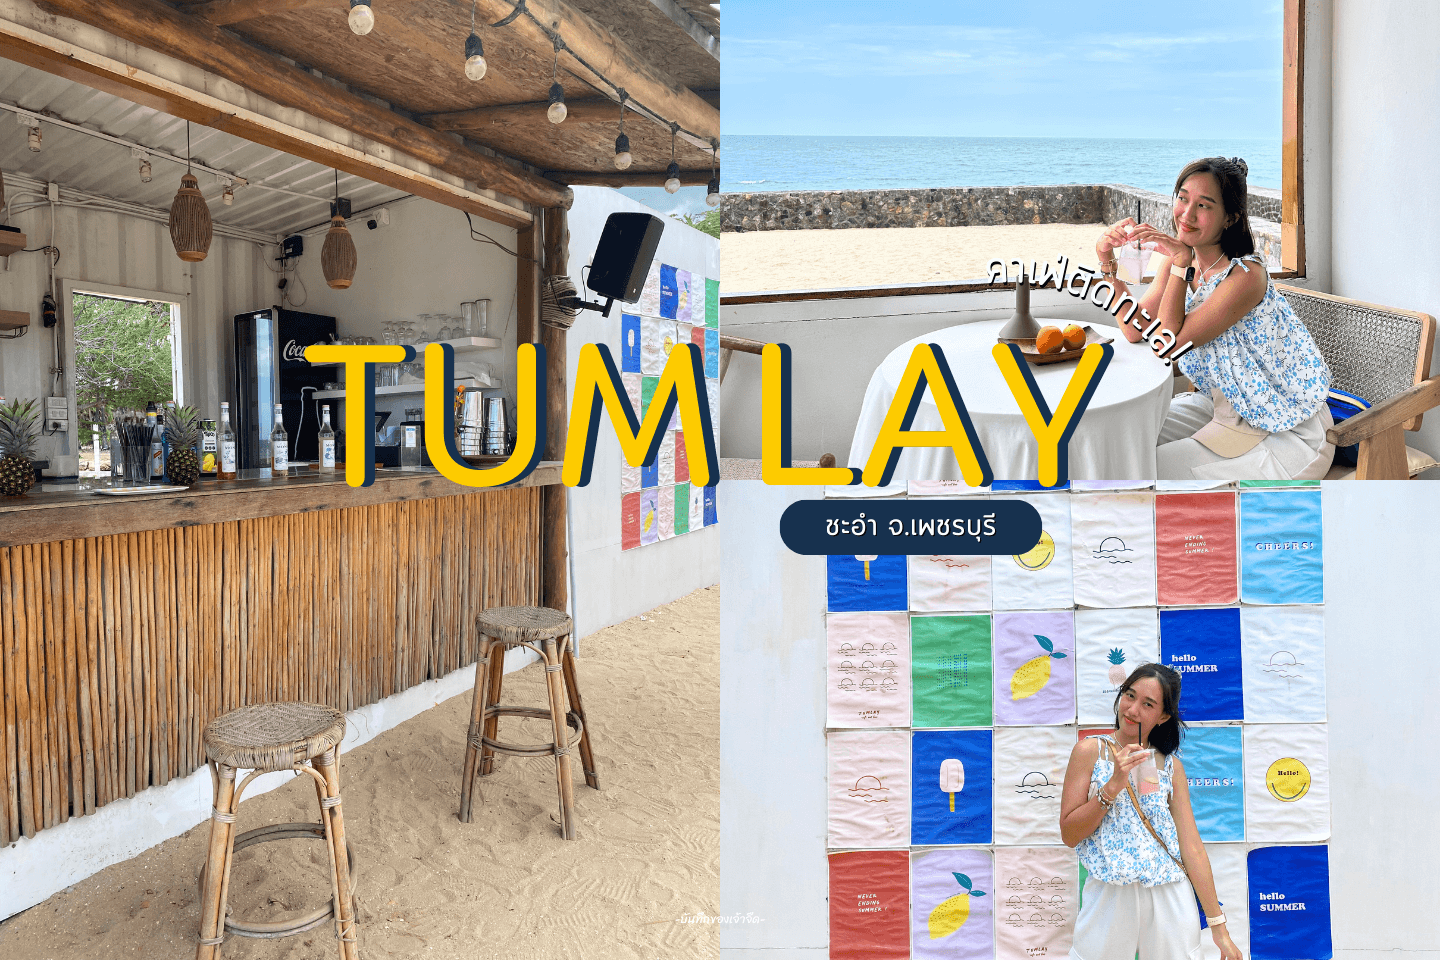 Tumlay Cafe